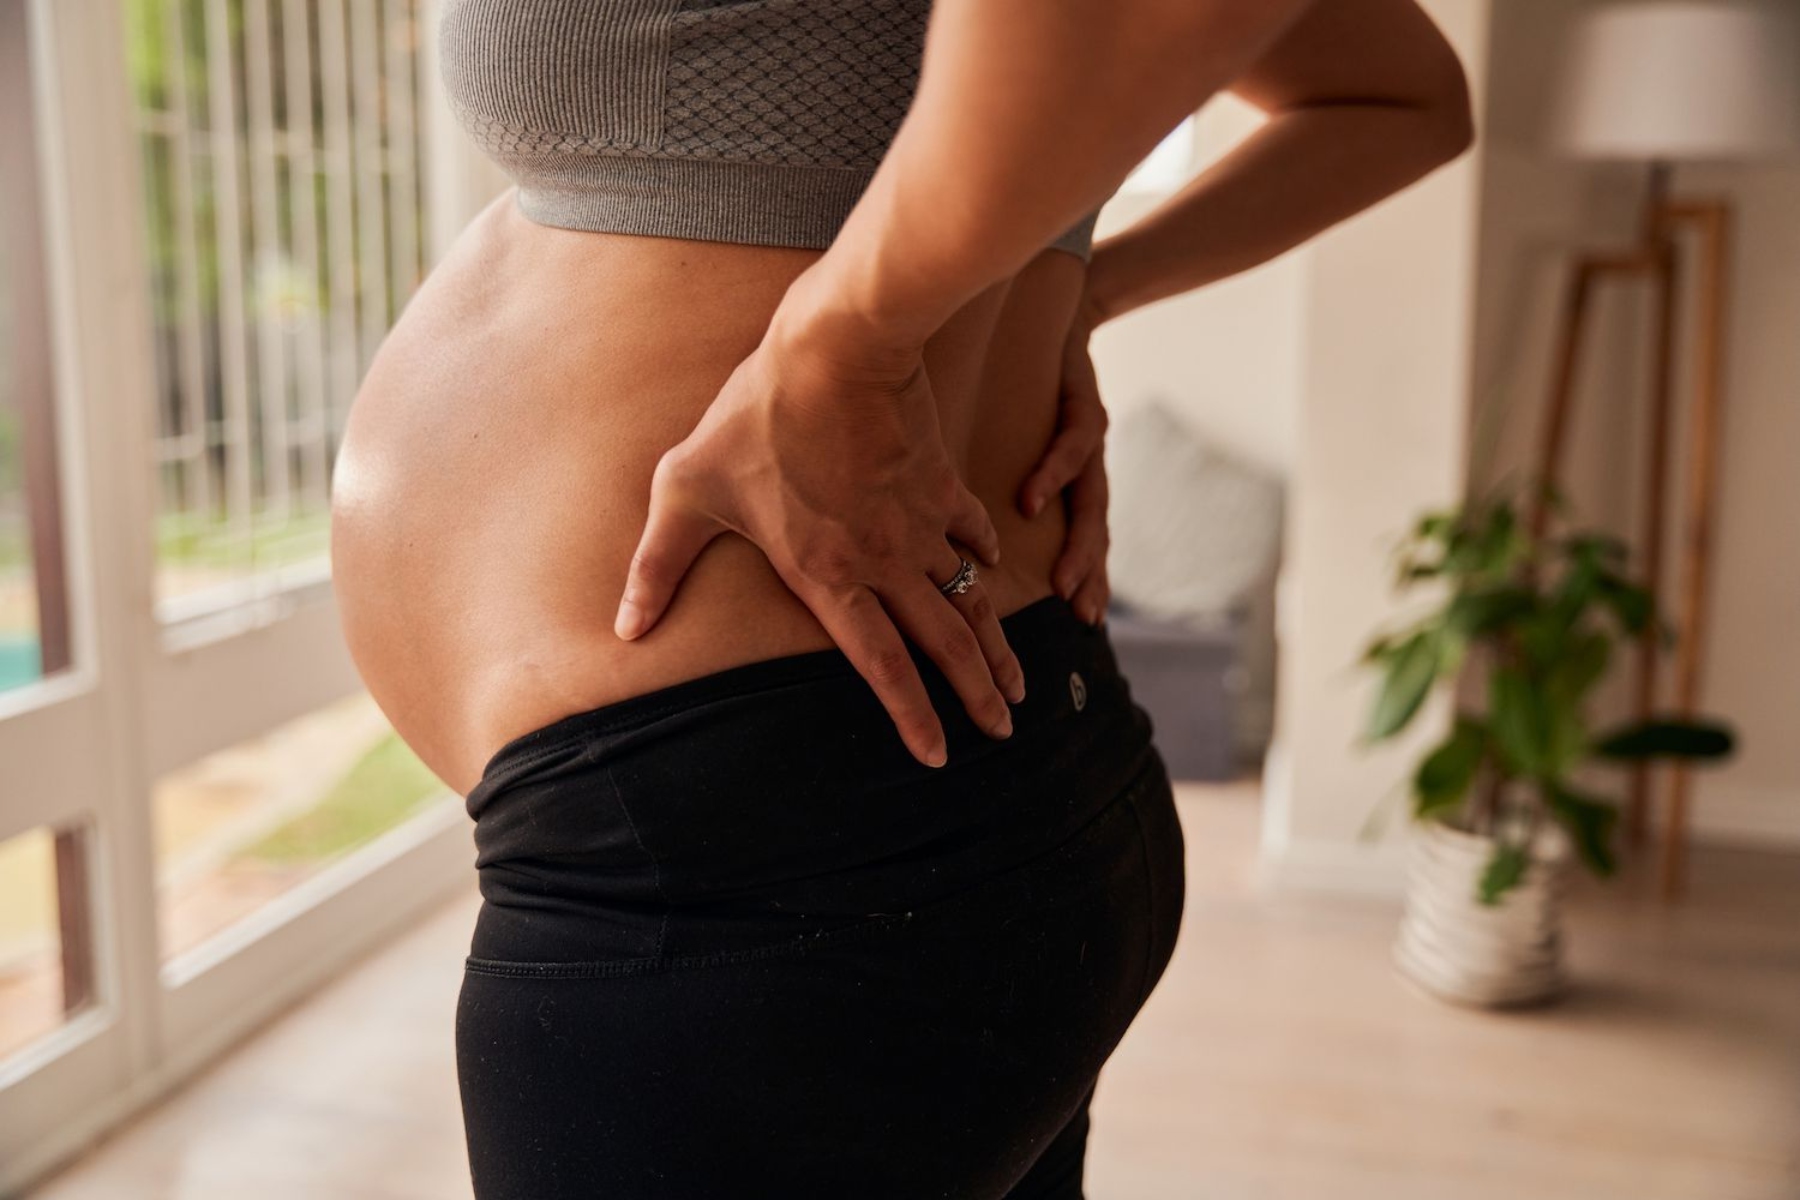 Οστεοπόρωση εγκυμοσύνη: Πώς θα προστατεύσετε τα οστά σας κατά την εγκυμοσύνη;